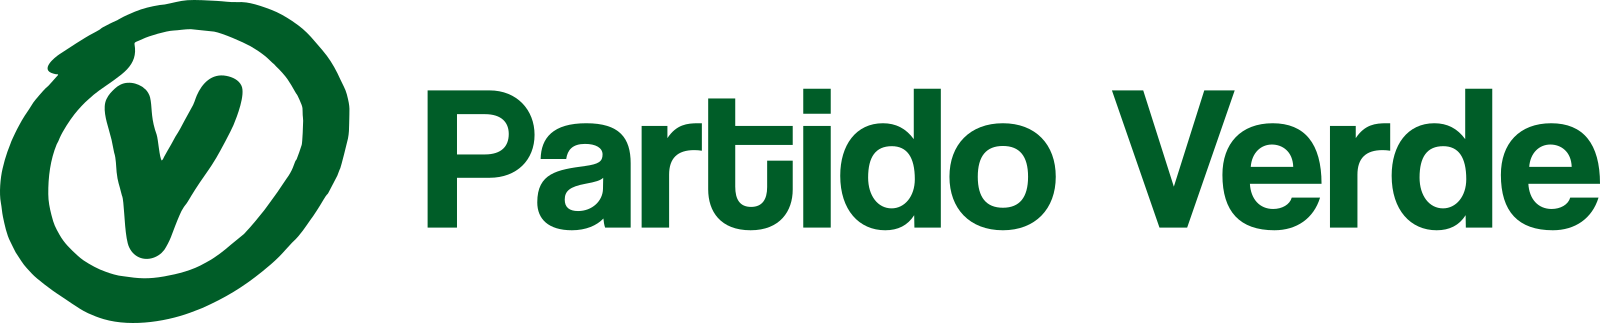 PV Logo, Partido Verde Logo.